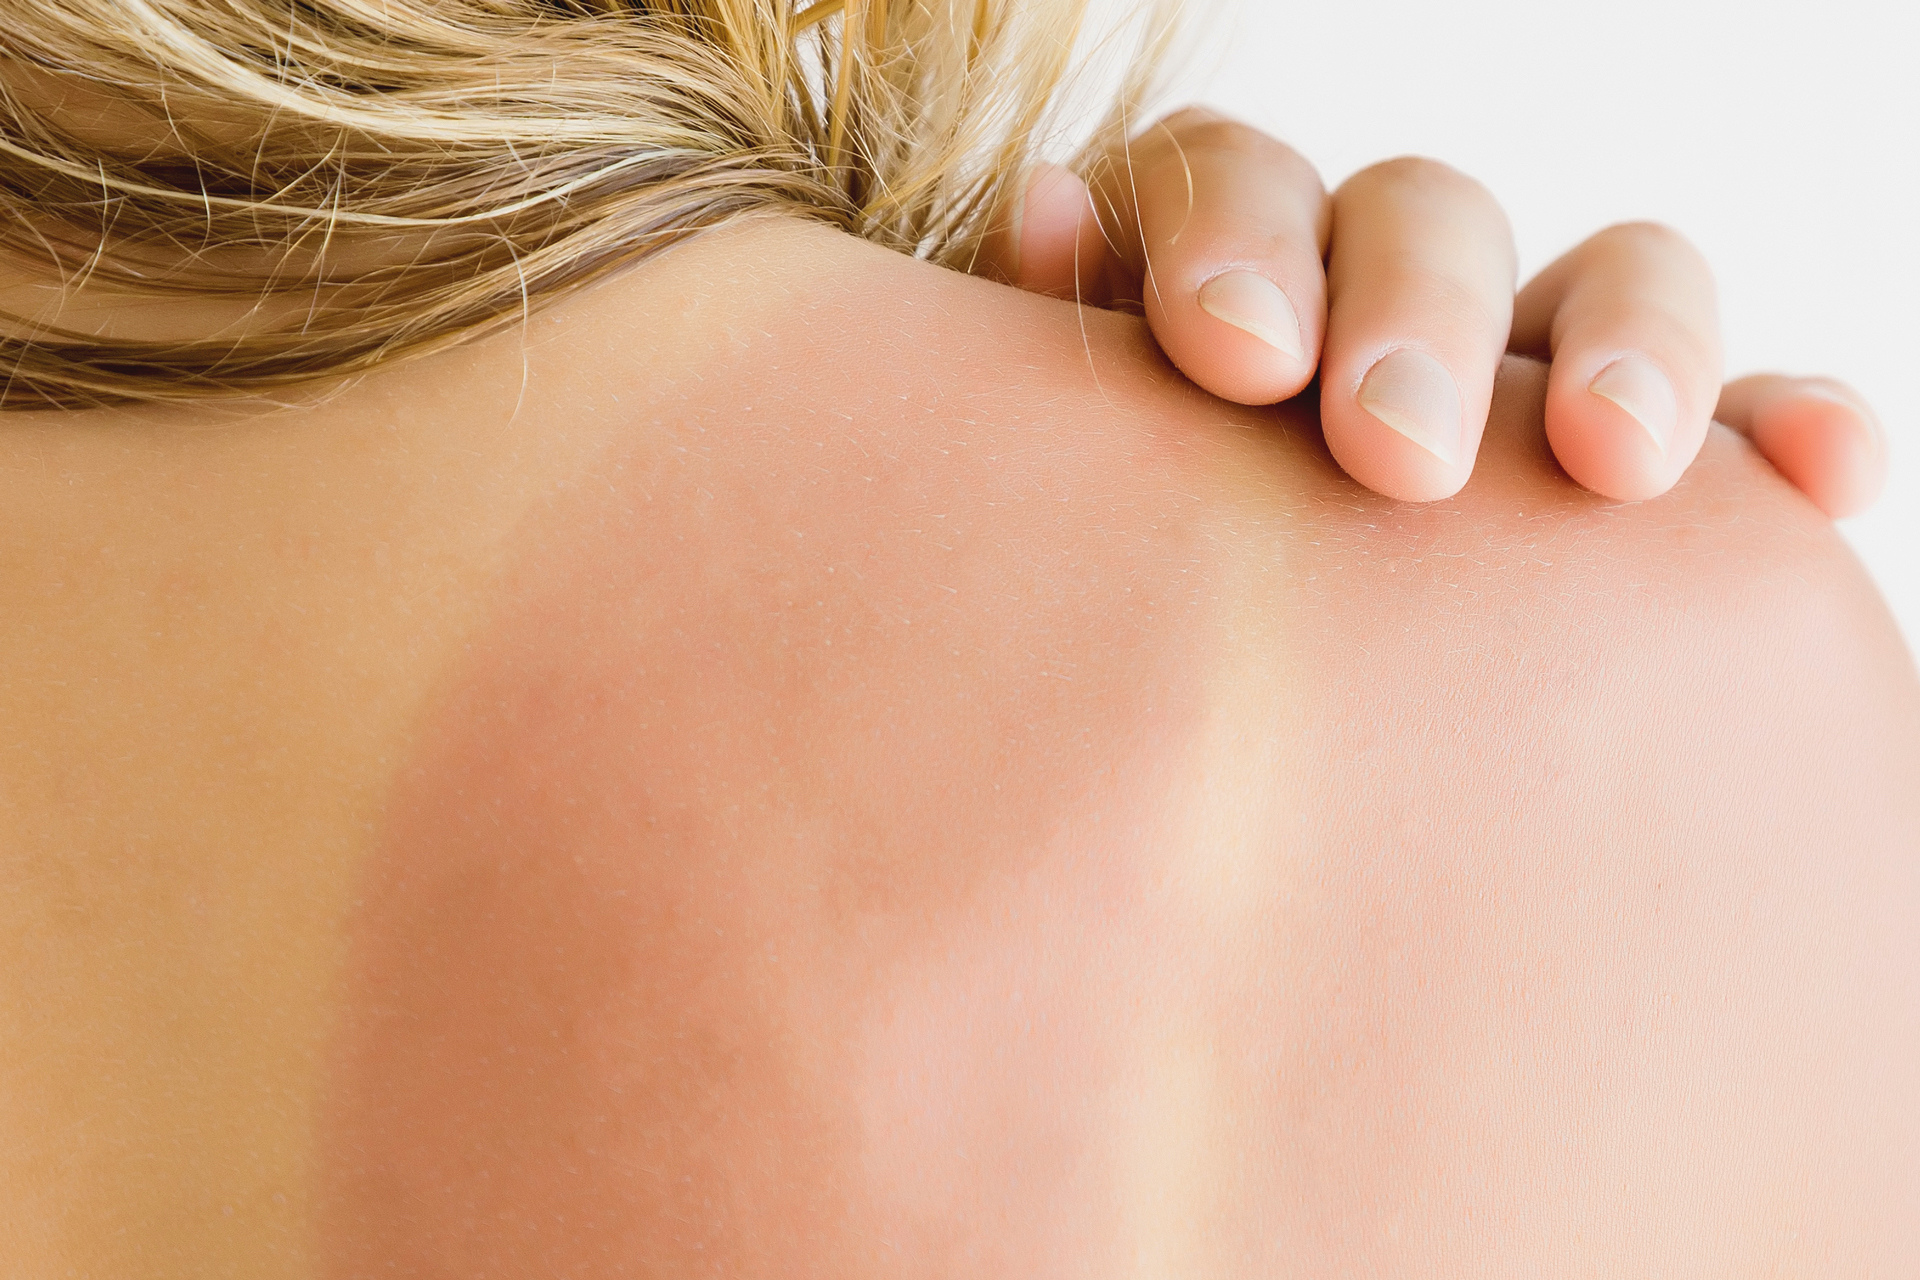 Профилактика аллергии на солнце &mdash; защита от раздражителя с помощью кремов, одежды и очков